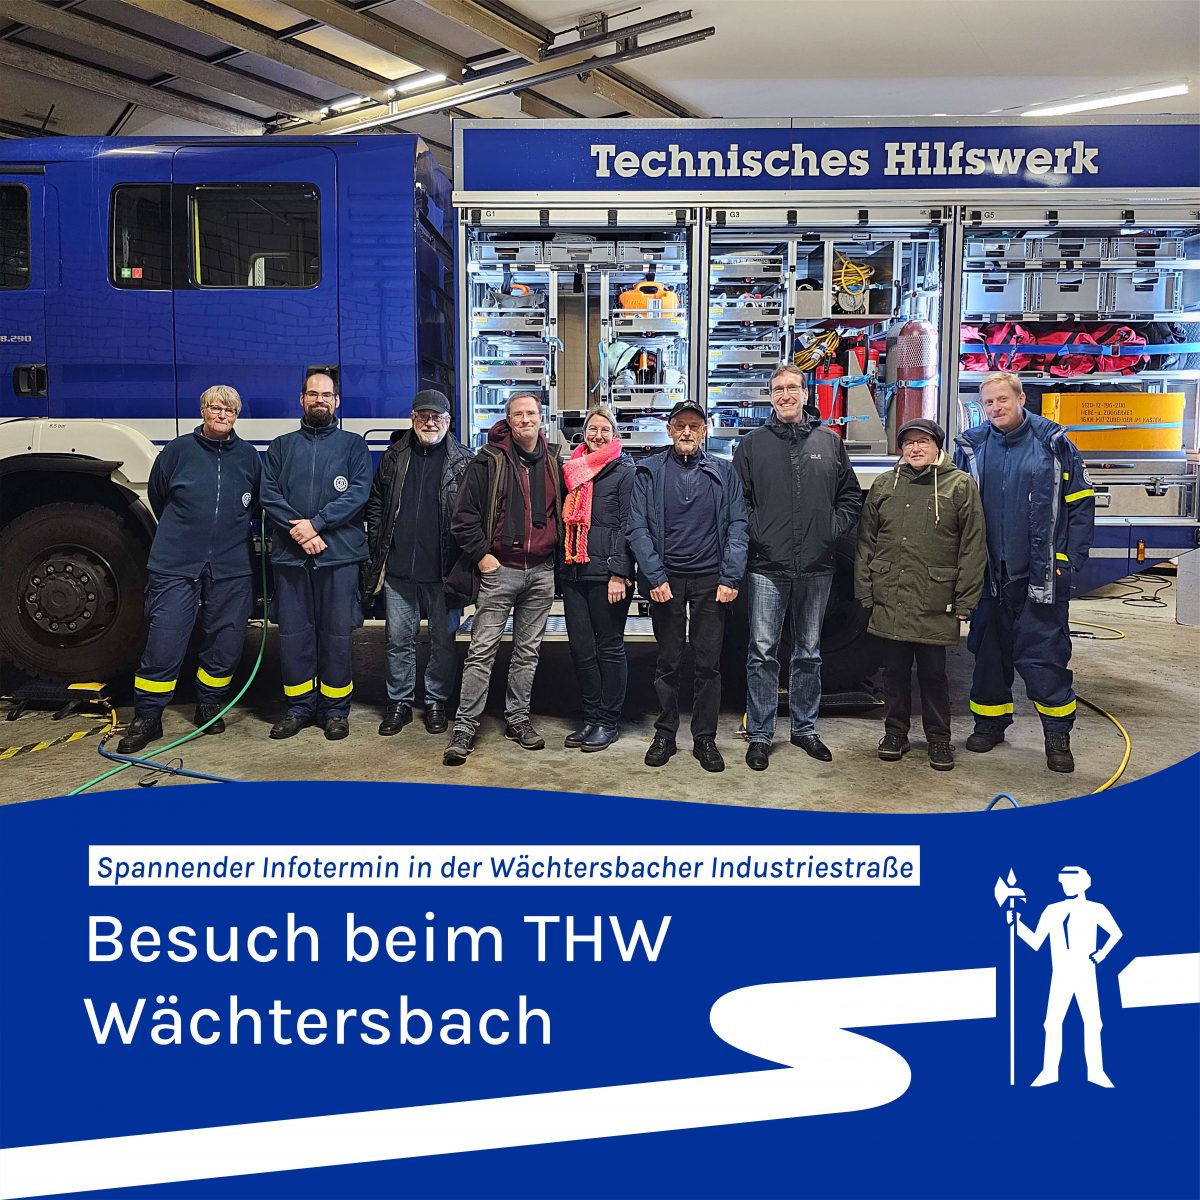 Besuch beim Technische Hilfswerk in Wächtersbach